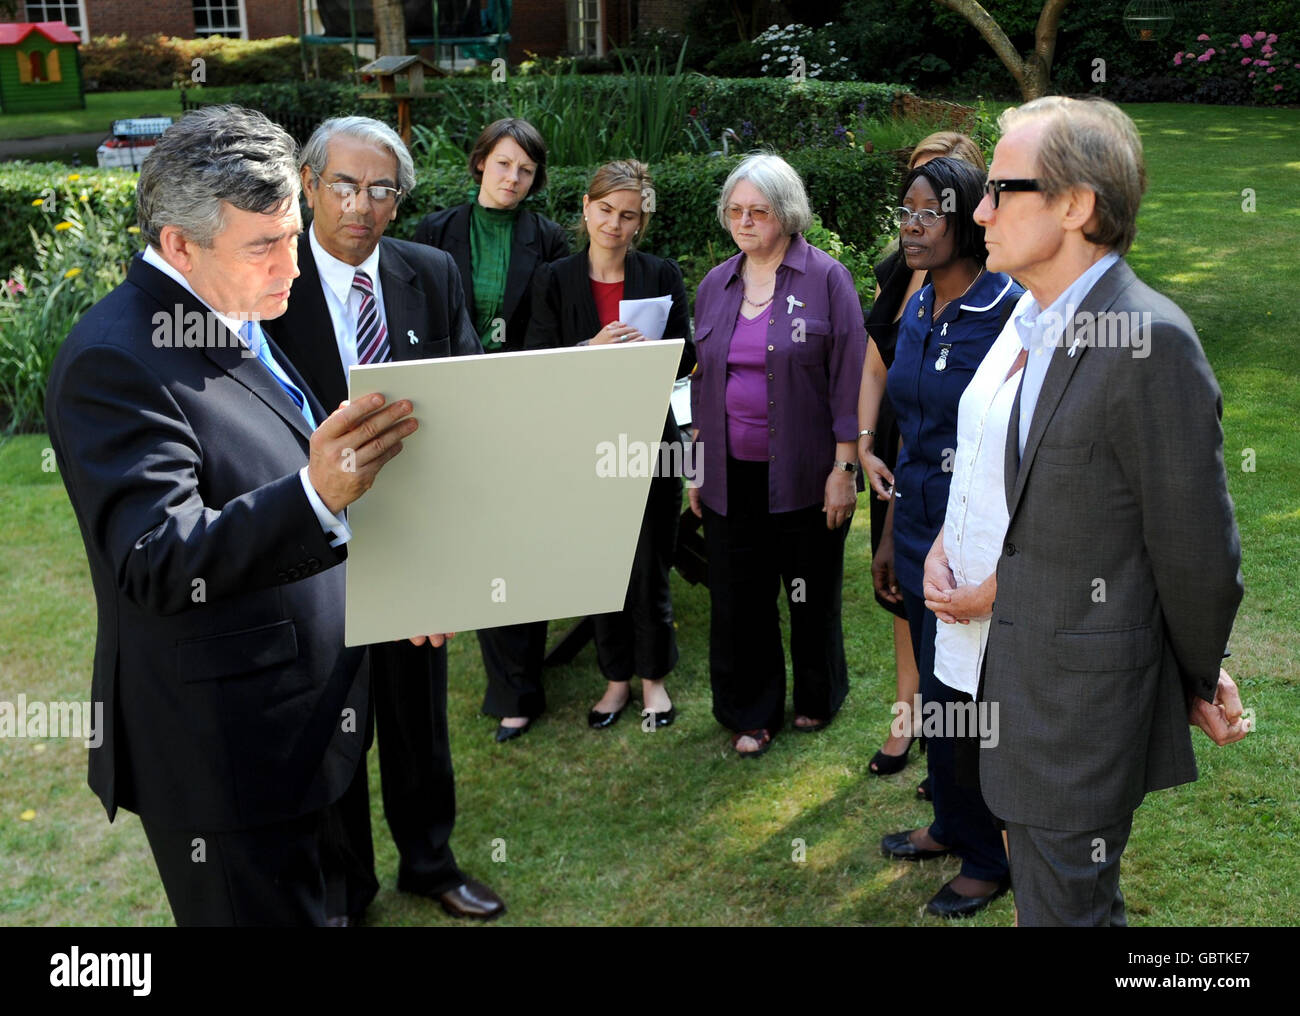 El Primer Ministro Gordon Brown se reúne con Bill Nighy (derecha) y miembros de la Campaña de Mortalidad Materna en el jardín de 10 Downing Street, Londres. Foto de stock